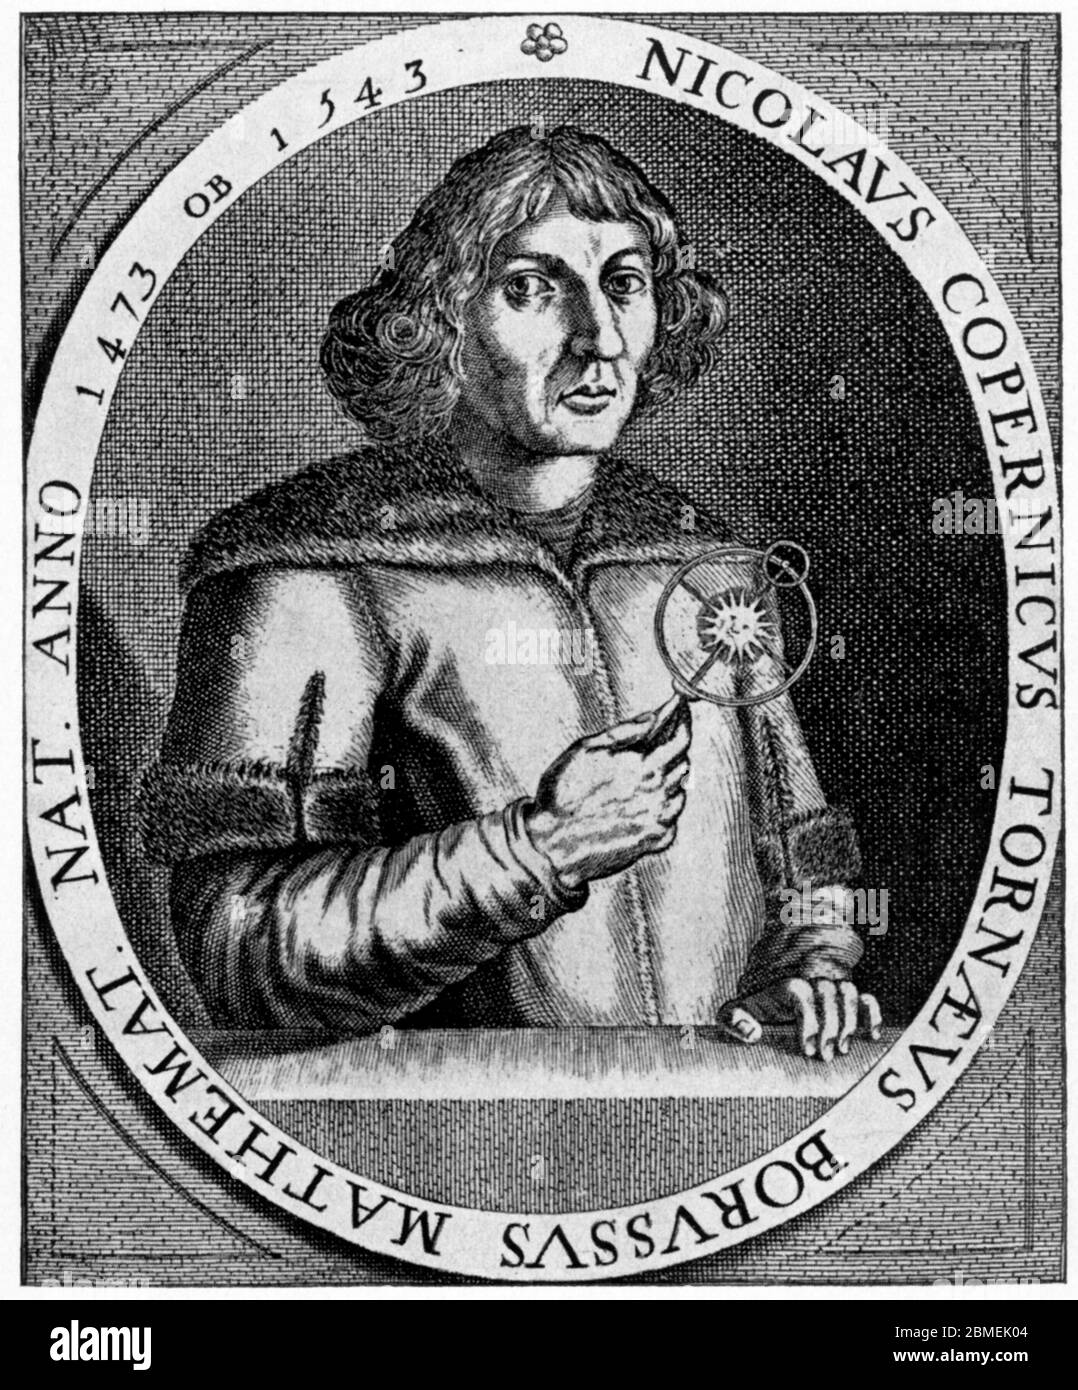 Nicolás Copérnico (1473-1543), monje astrónomo prusiano del Renacimiento, Autor de la teoría heliocéntrica del sistema Solar. Stockfoto